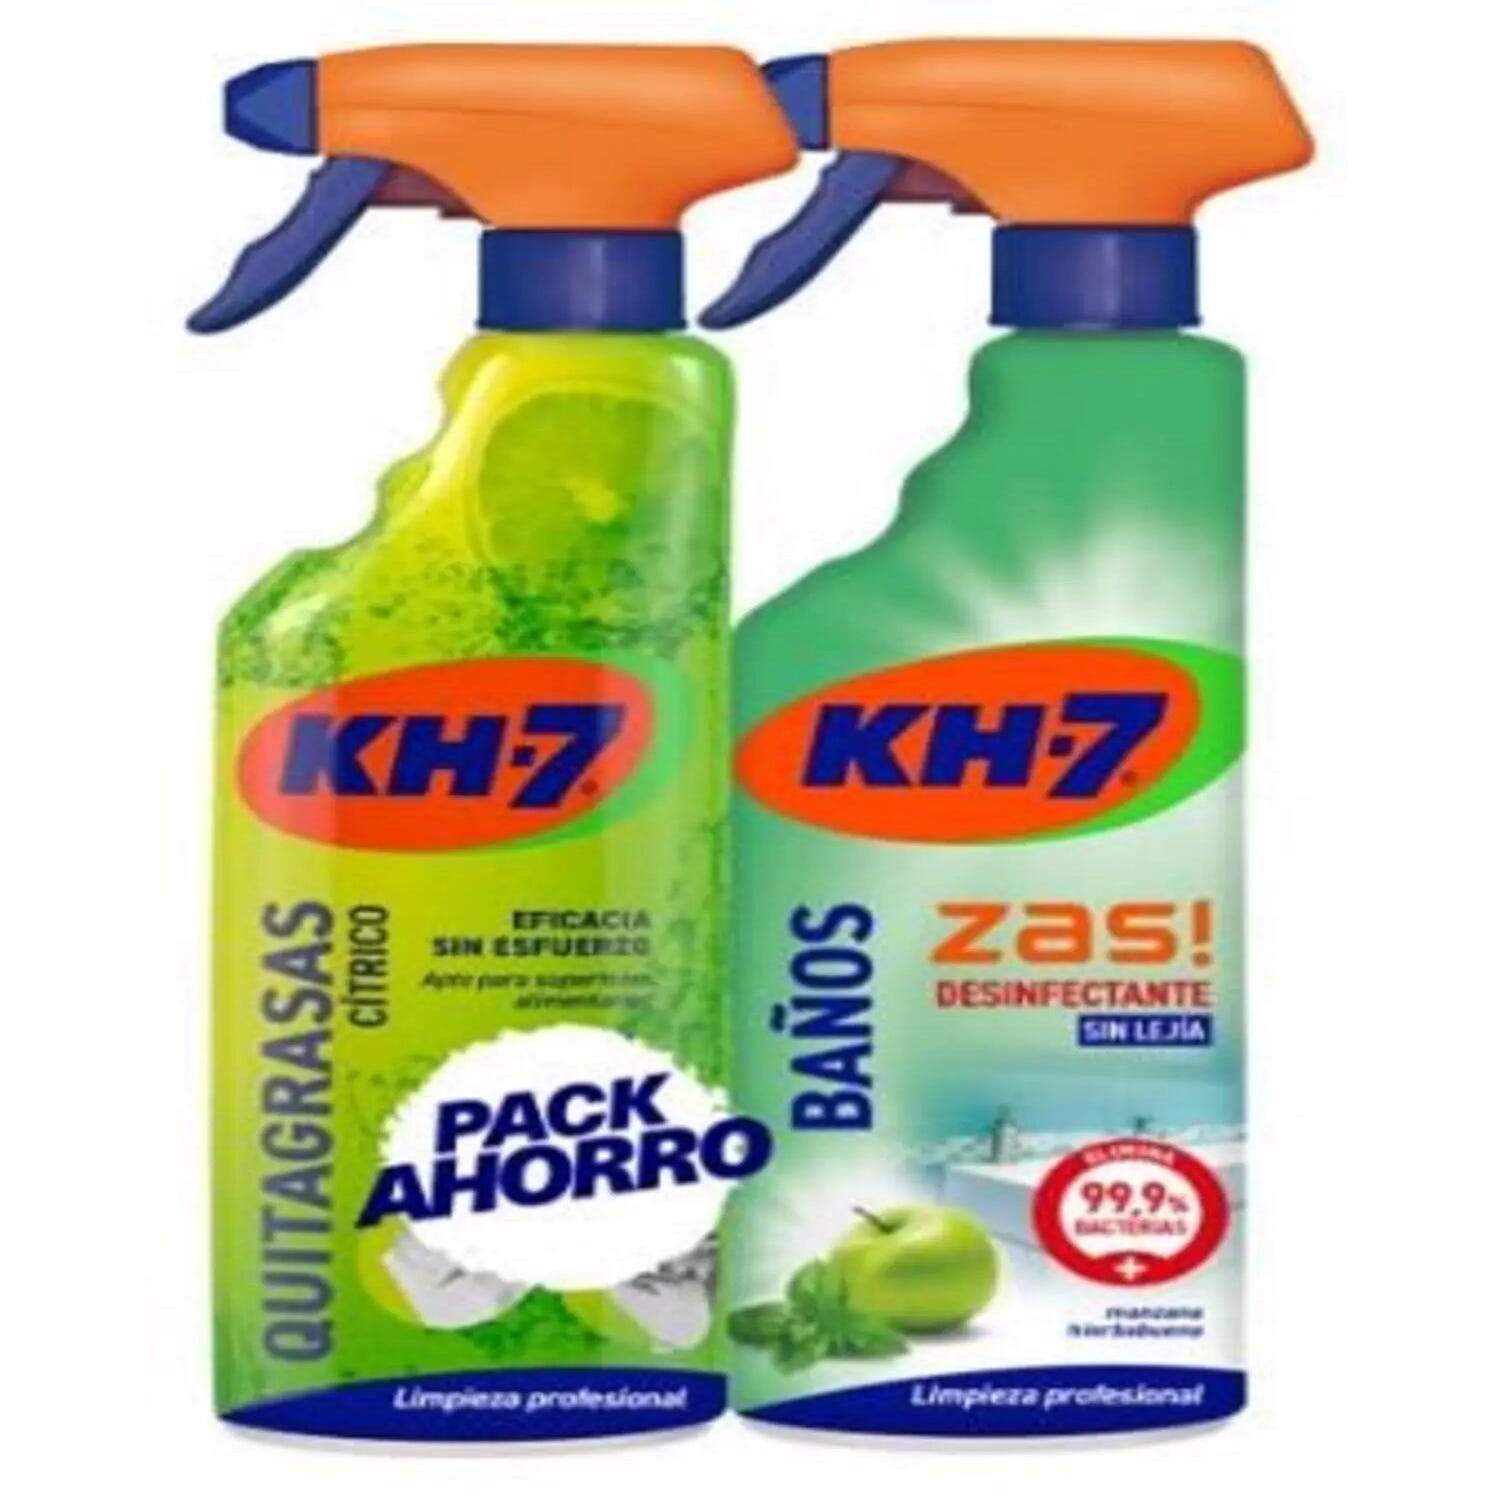 KH-7 Limpiador Baños y Desinfectante - Desinfección sin lejía